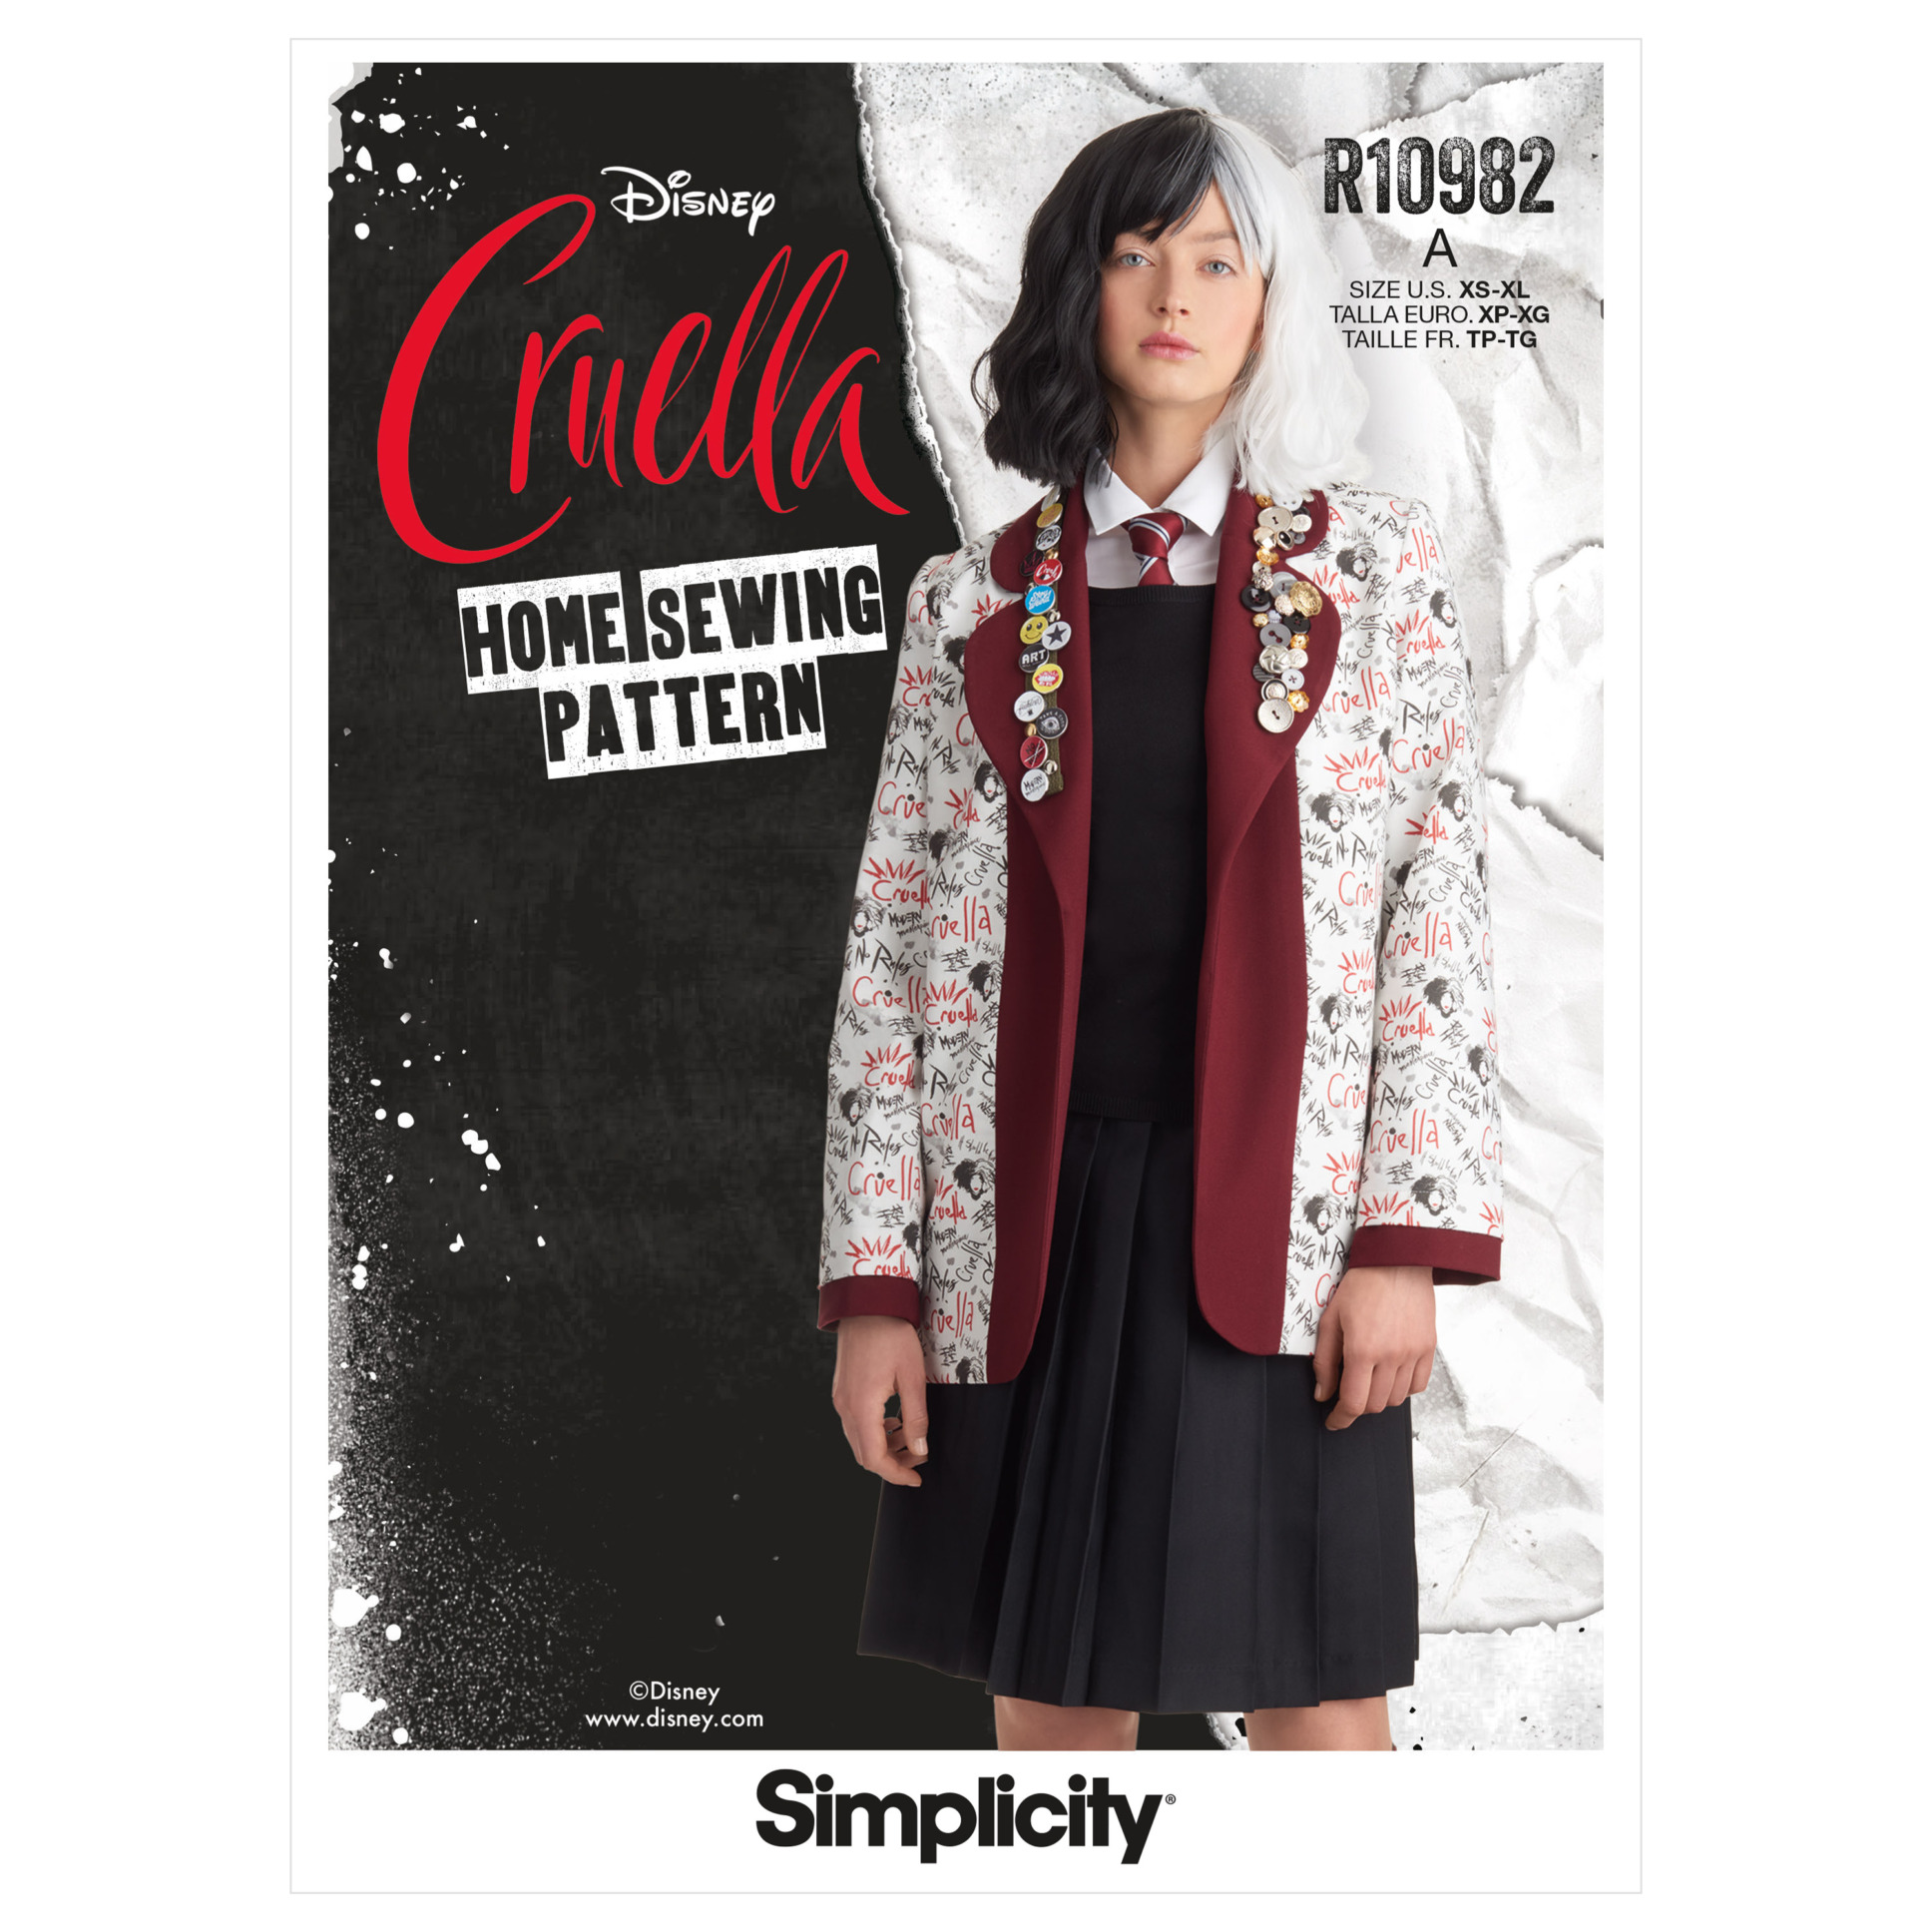 Cruella/Estella Fashion  Cruella deville, Cruella, Emma stone